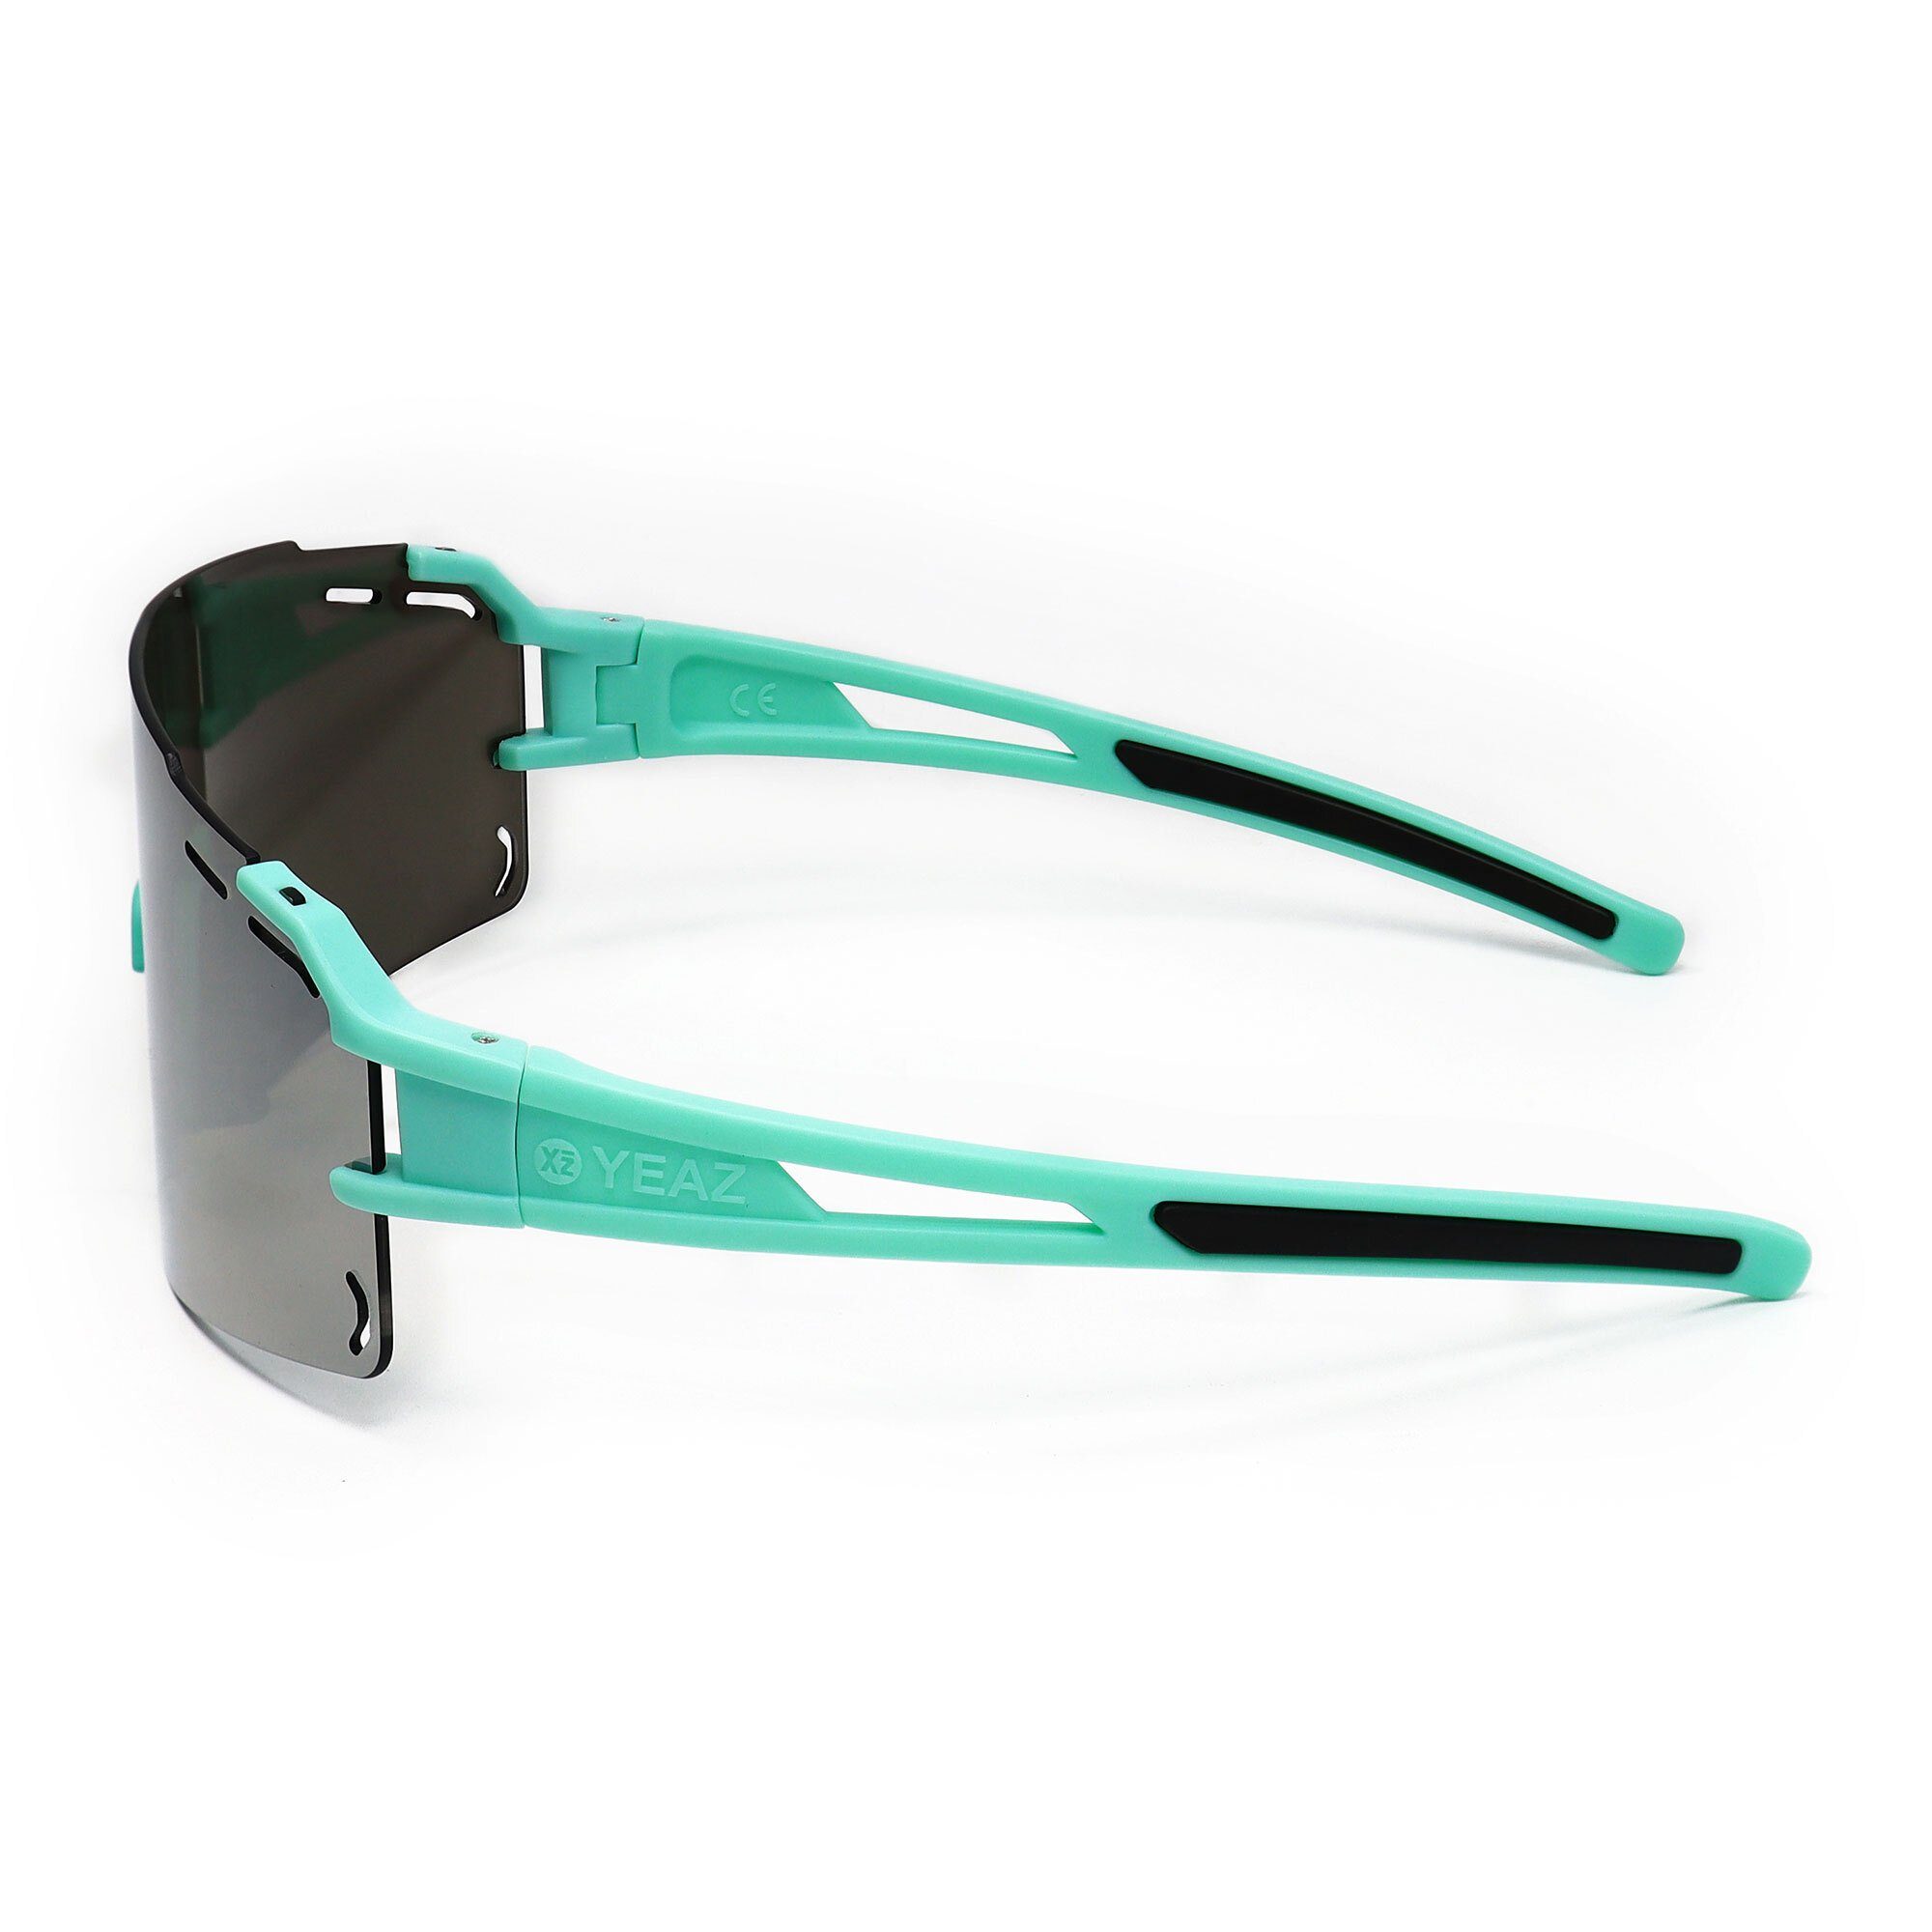 Sportbrille YEAZ grün silber grün, Sport-Sonnenbrille SUNCRUISE sport-sonnenbrille /